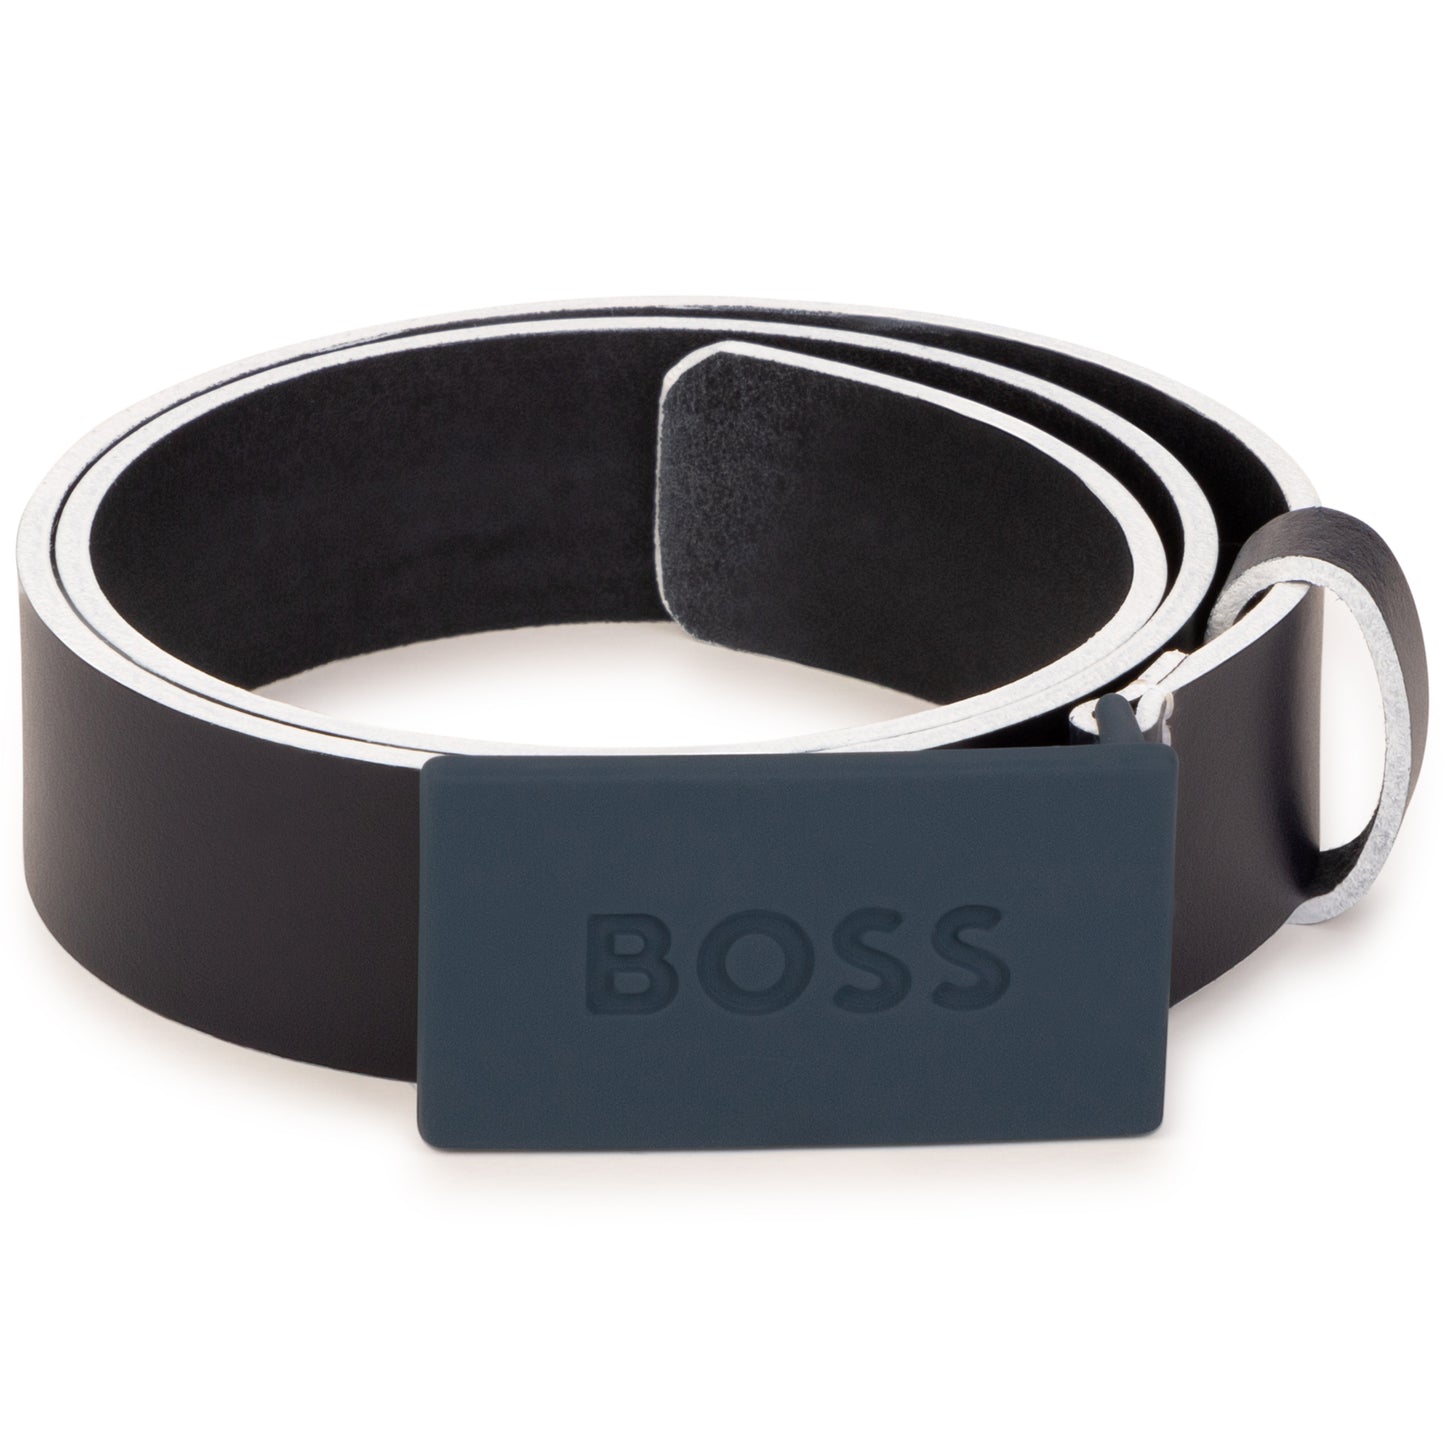 Hugo Boss Boys Leather Belt_ Navy J20332-849